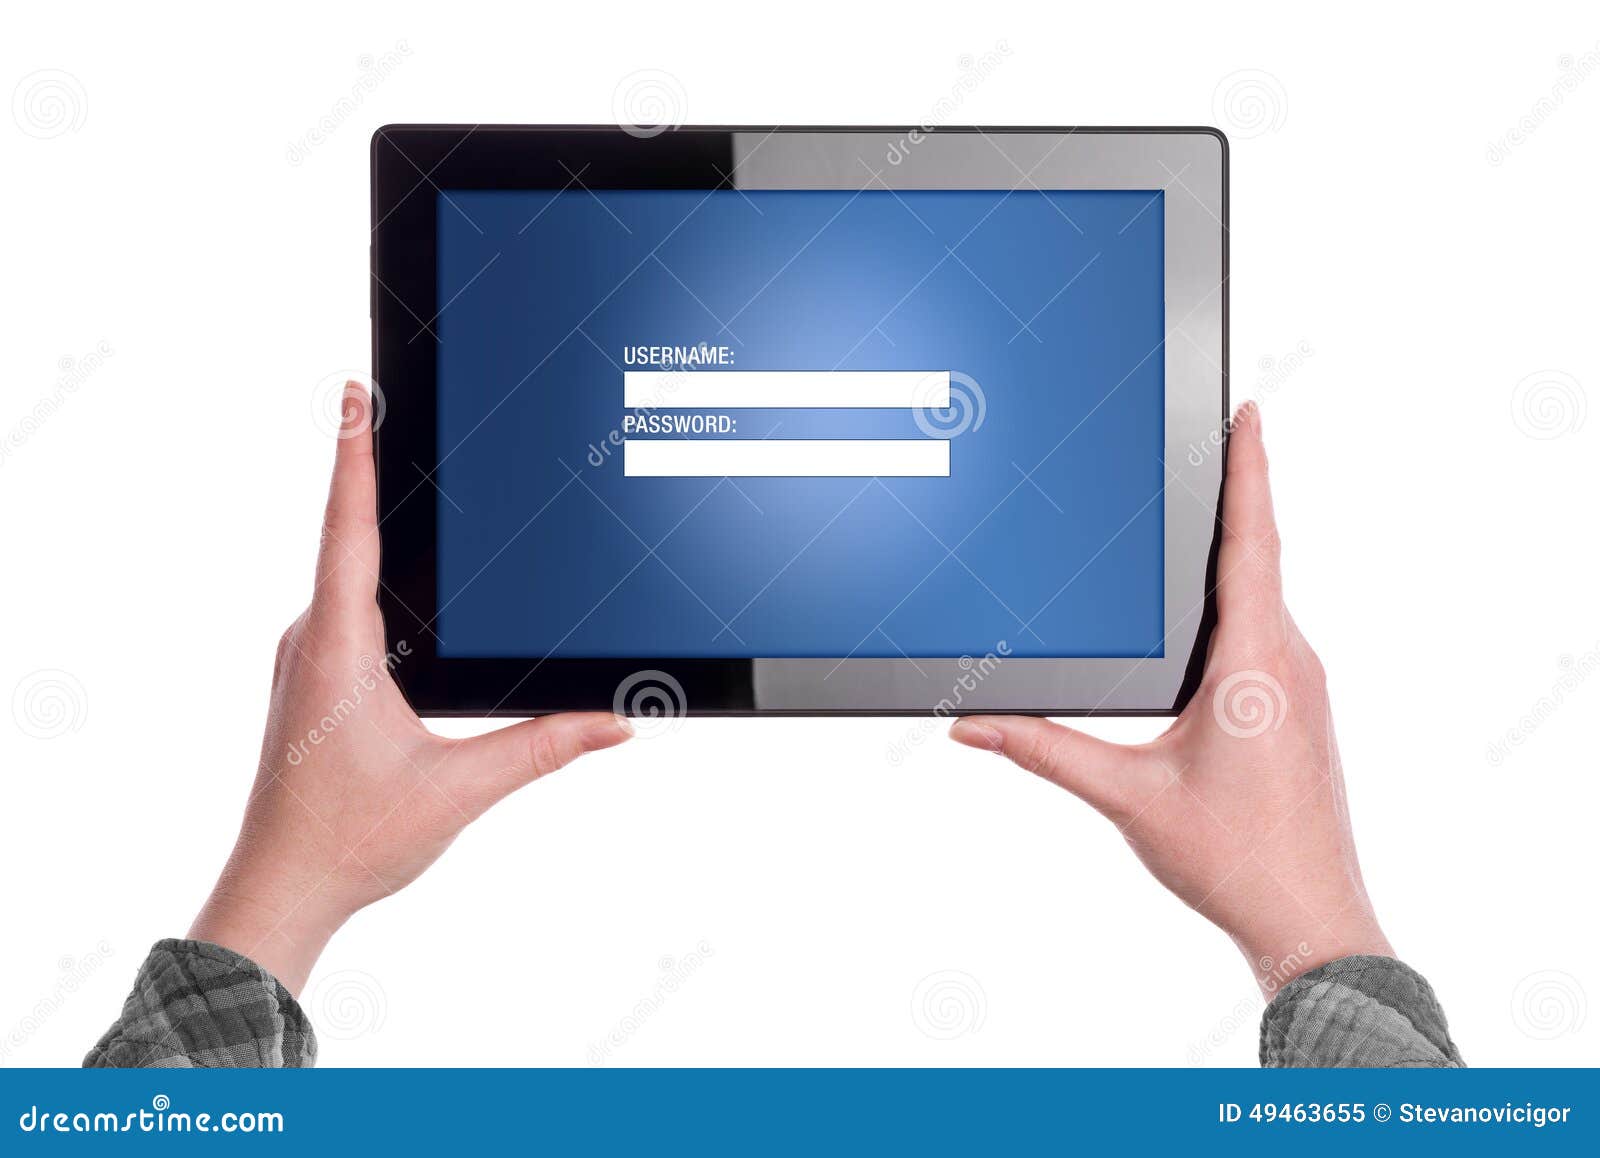 Σελίδα σύνδεσης στον ψηφιακό υπολογιστή ταμπλετών. Χέρια που κρατούν τον ψηφιακό υπολογιστή ταμπλετών με τη μορφή ιστοσελίδας σύνδεσης που επιδεικνύεται